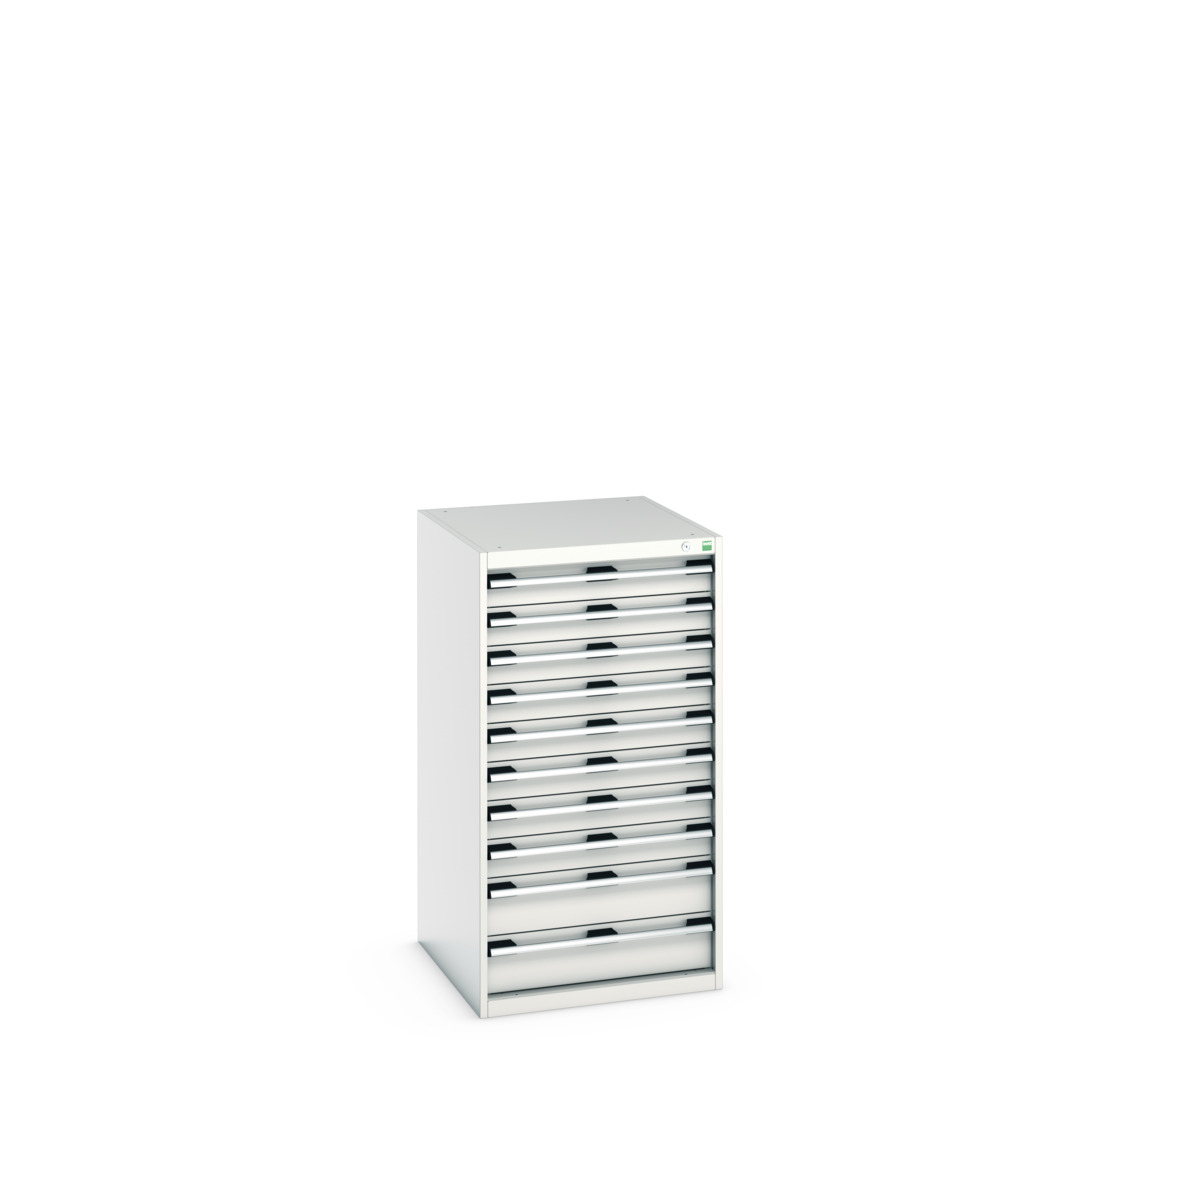 40027043.16V - cubio drawer cabinet